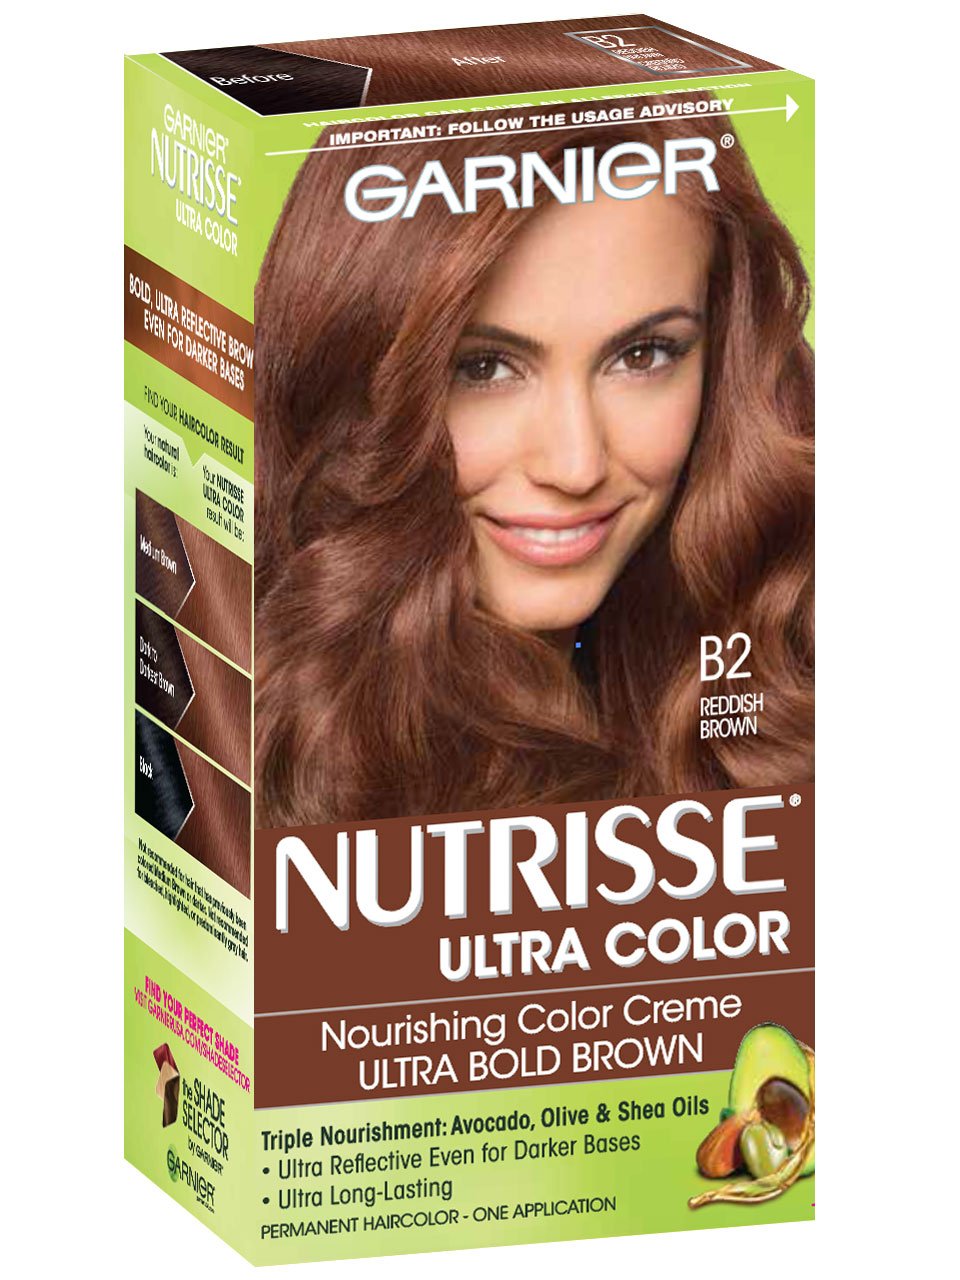 Nutrisse Ultra-Color - Reddish Brown Hair Color - Garnier